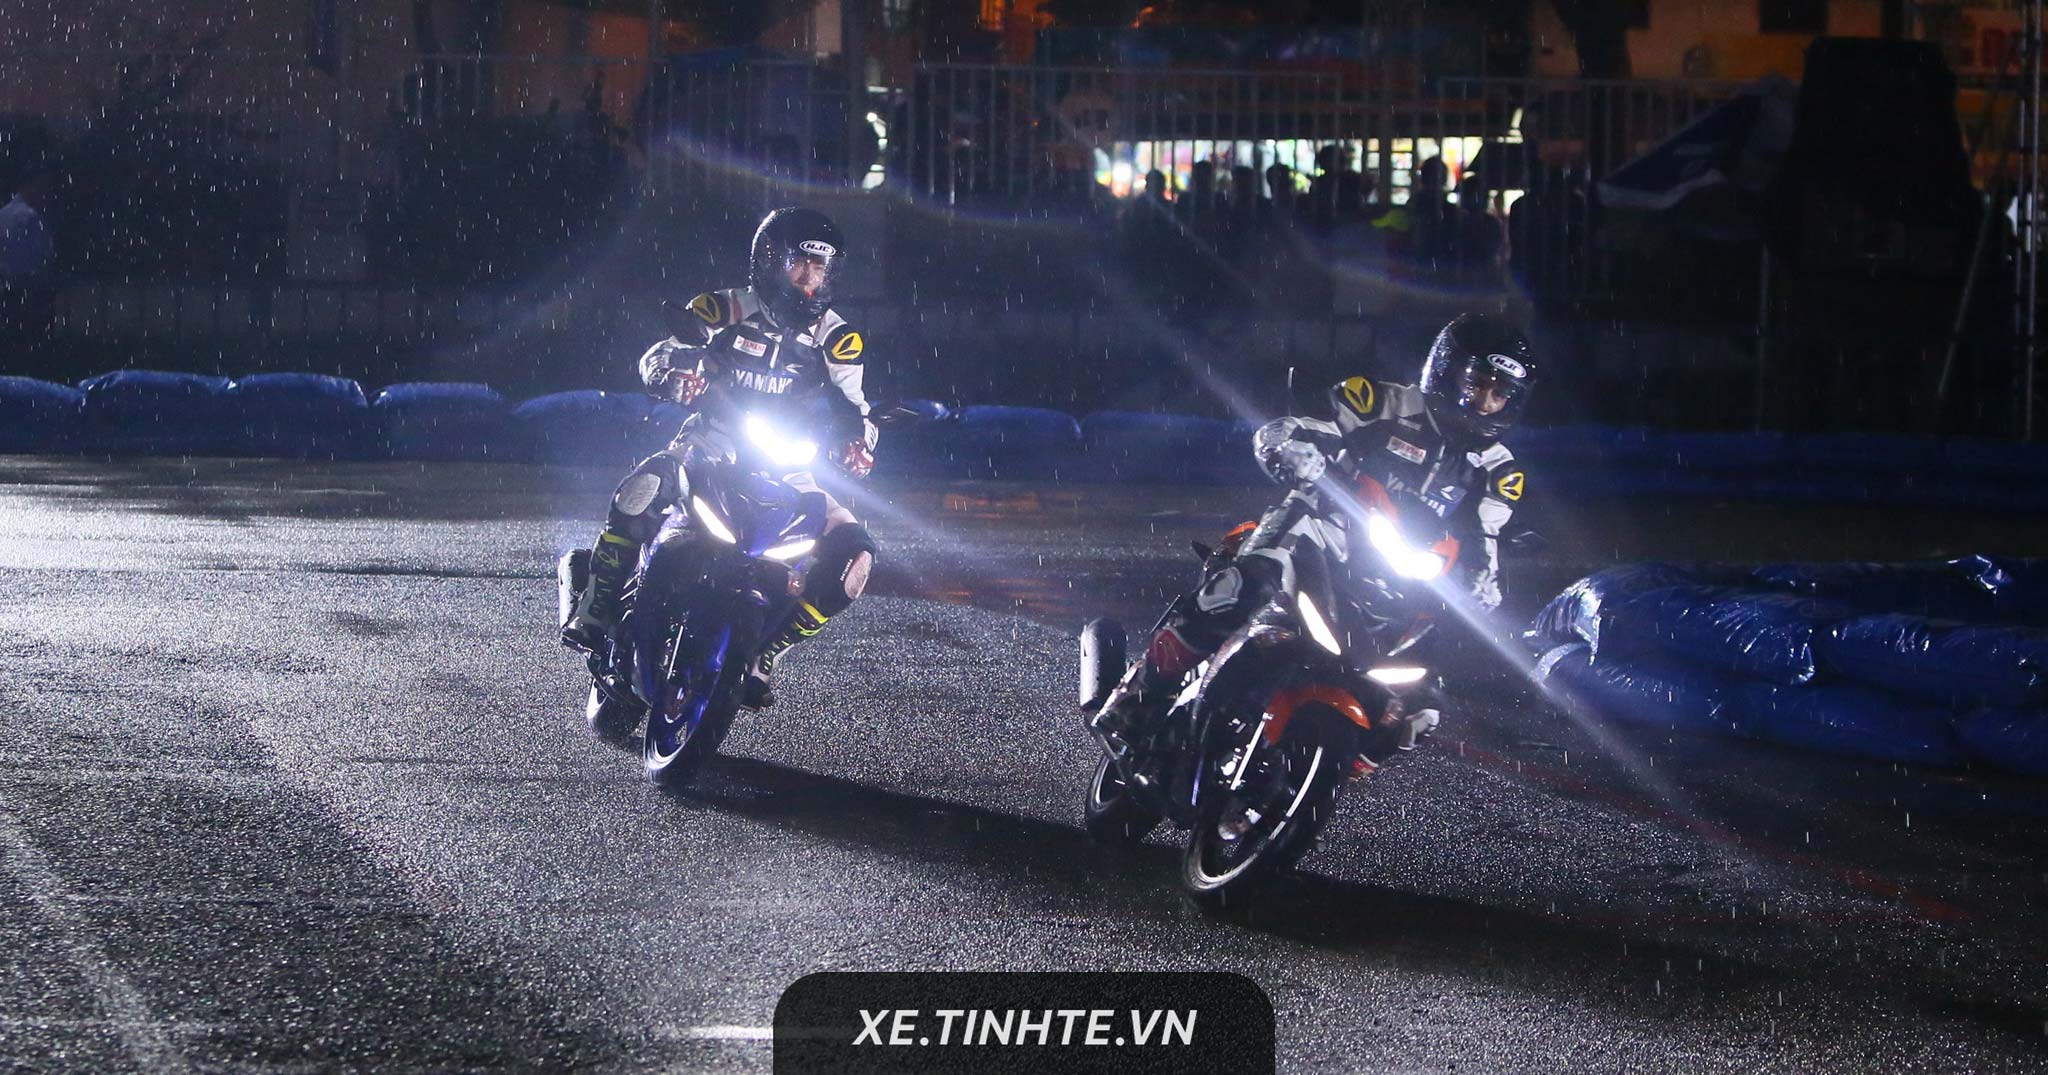 Yamaha GP và Exciter Festival 2018: đua xe đêm dưới mưa, trưng bày xe độ, 1000 xe xếp hình độc đáo